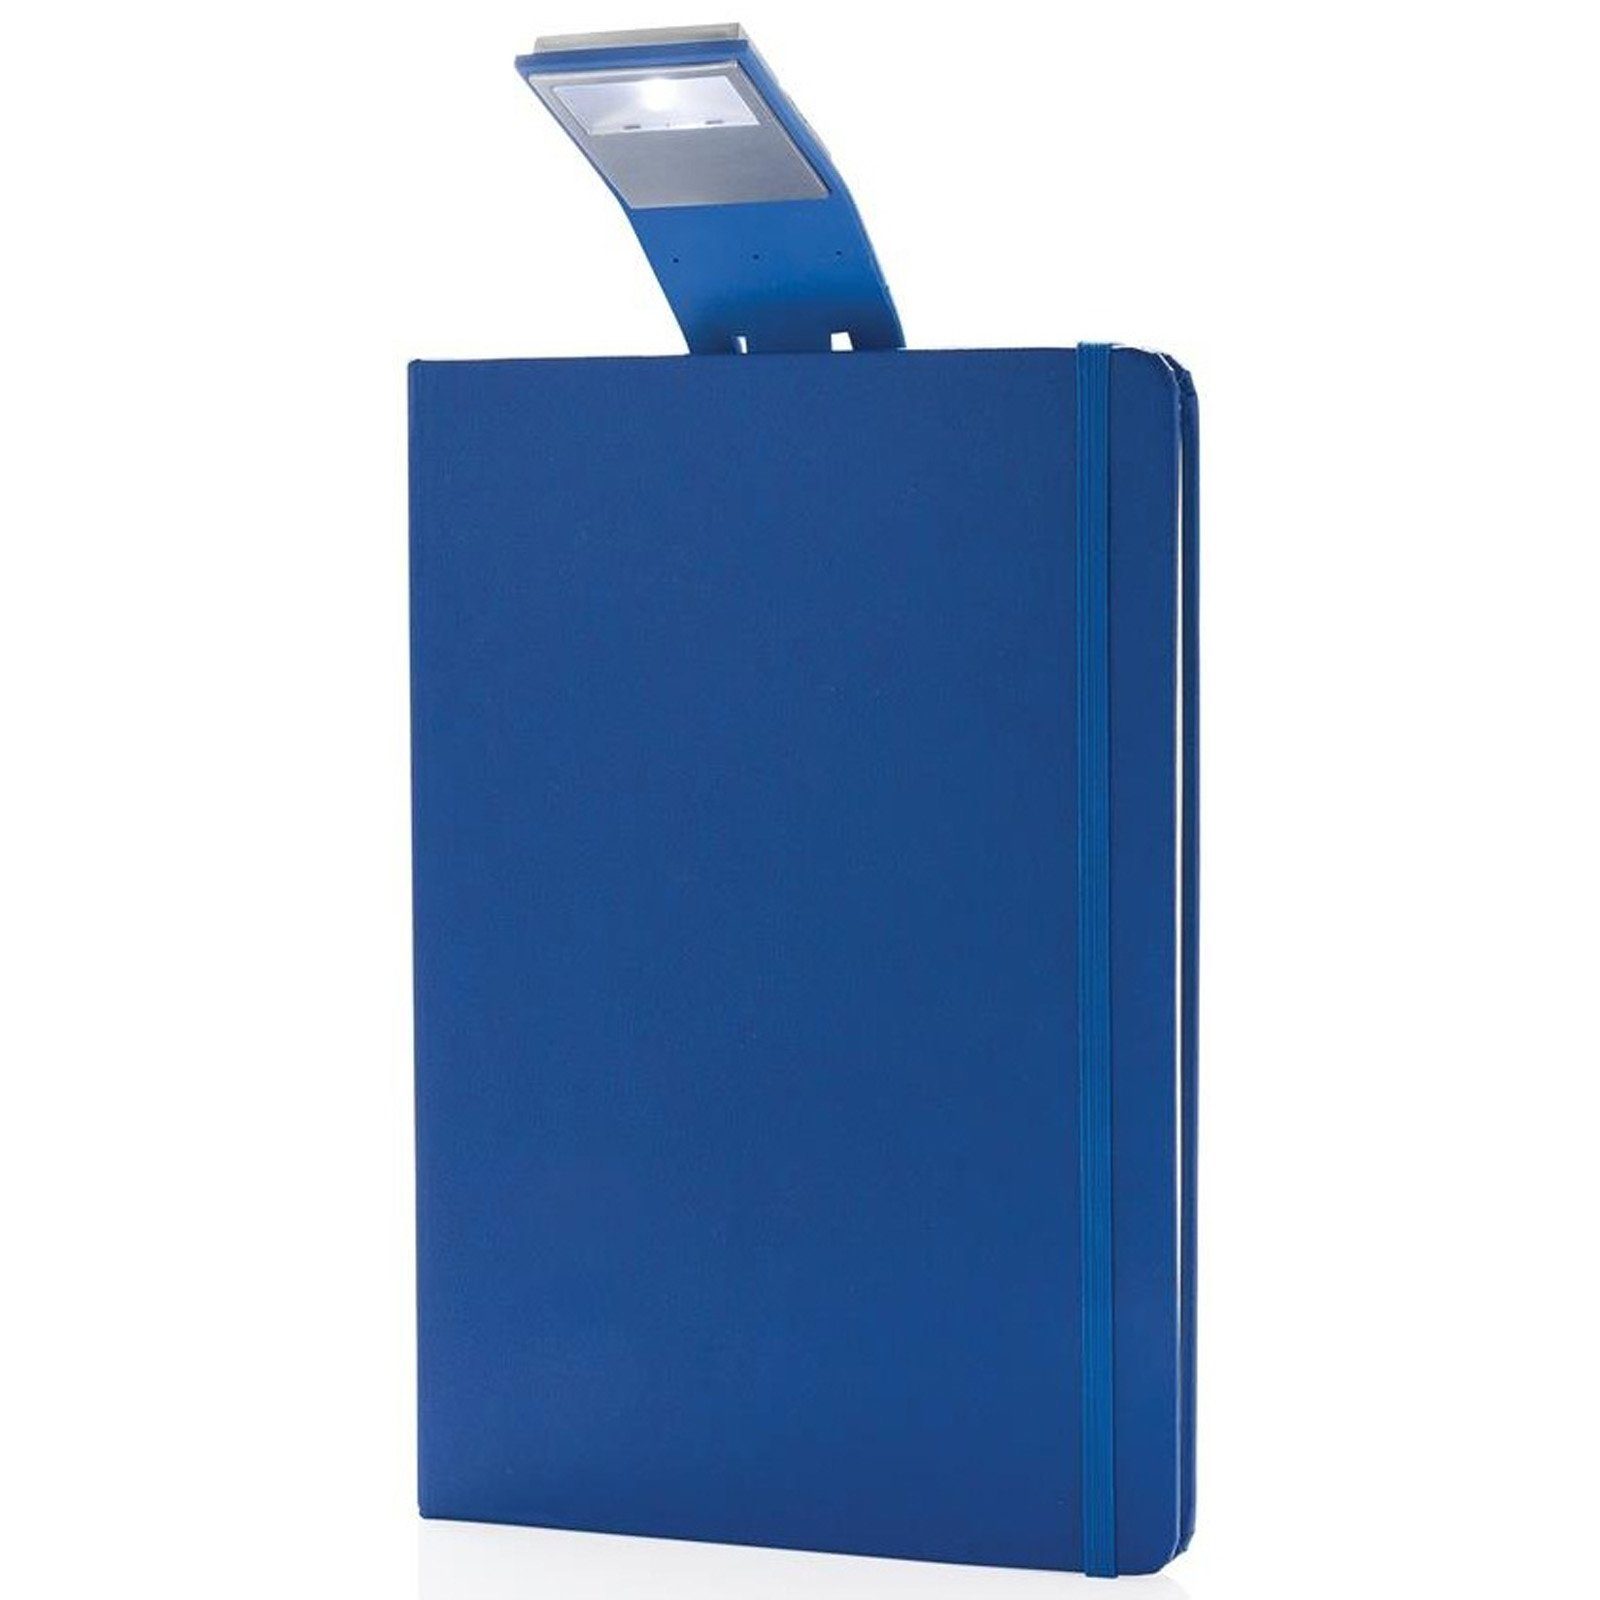 XD Collection Notizbuch Notizblock A5 mit Hardcover Leselampe 160 cremeweiße Seiten Liniert, mit LED Lesezeichen & Gummiband blau